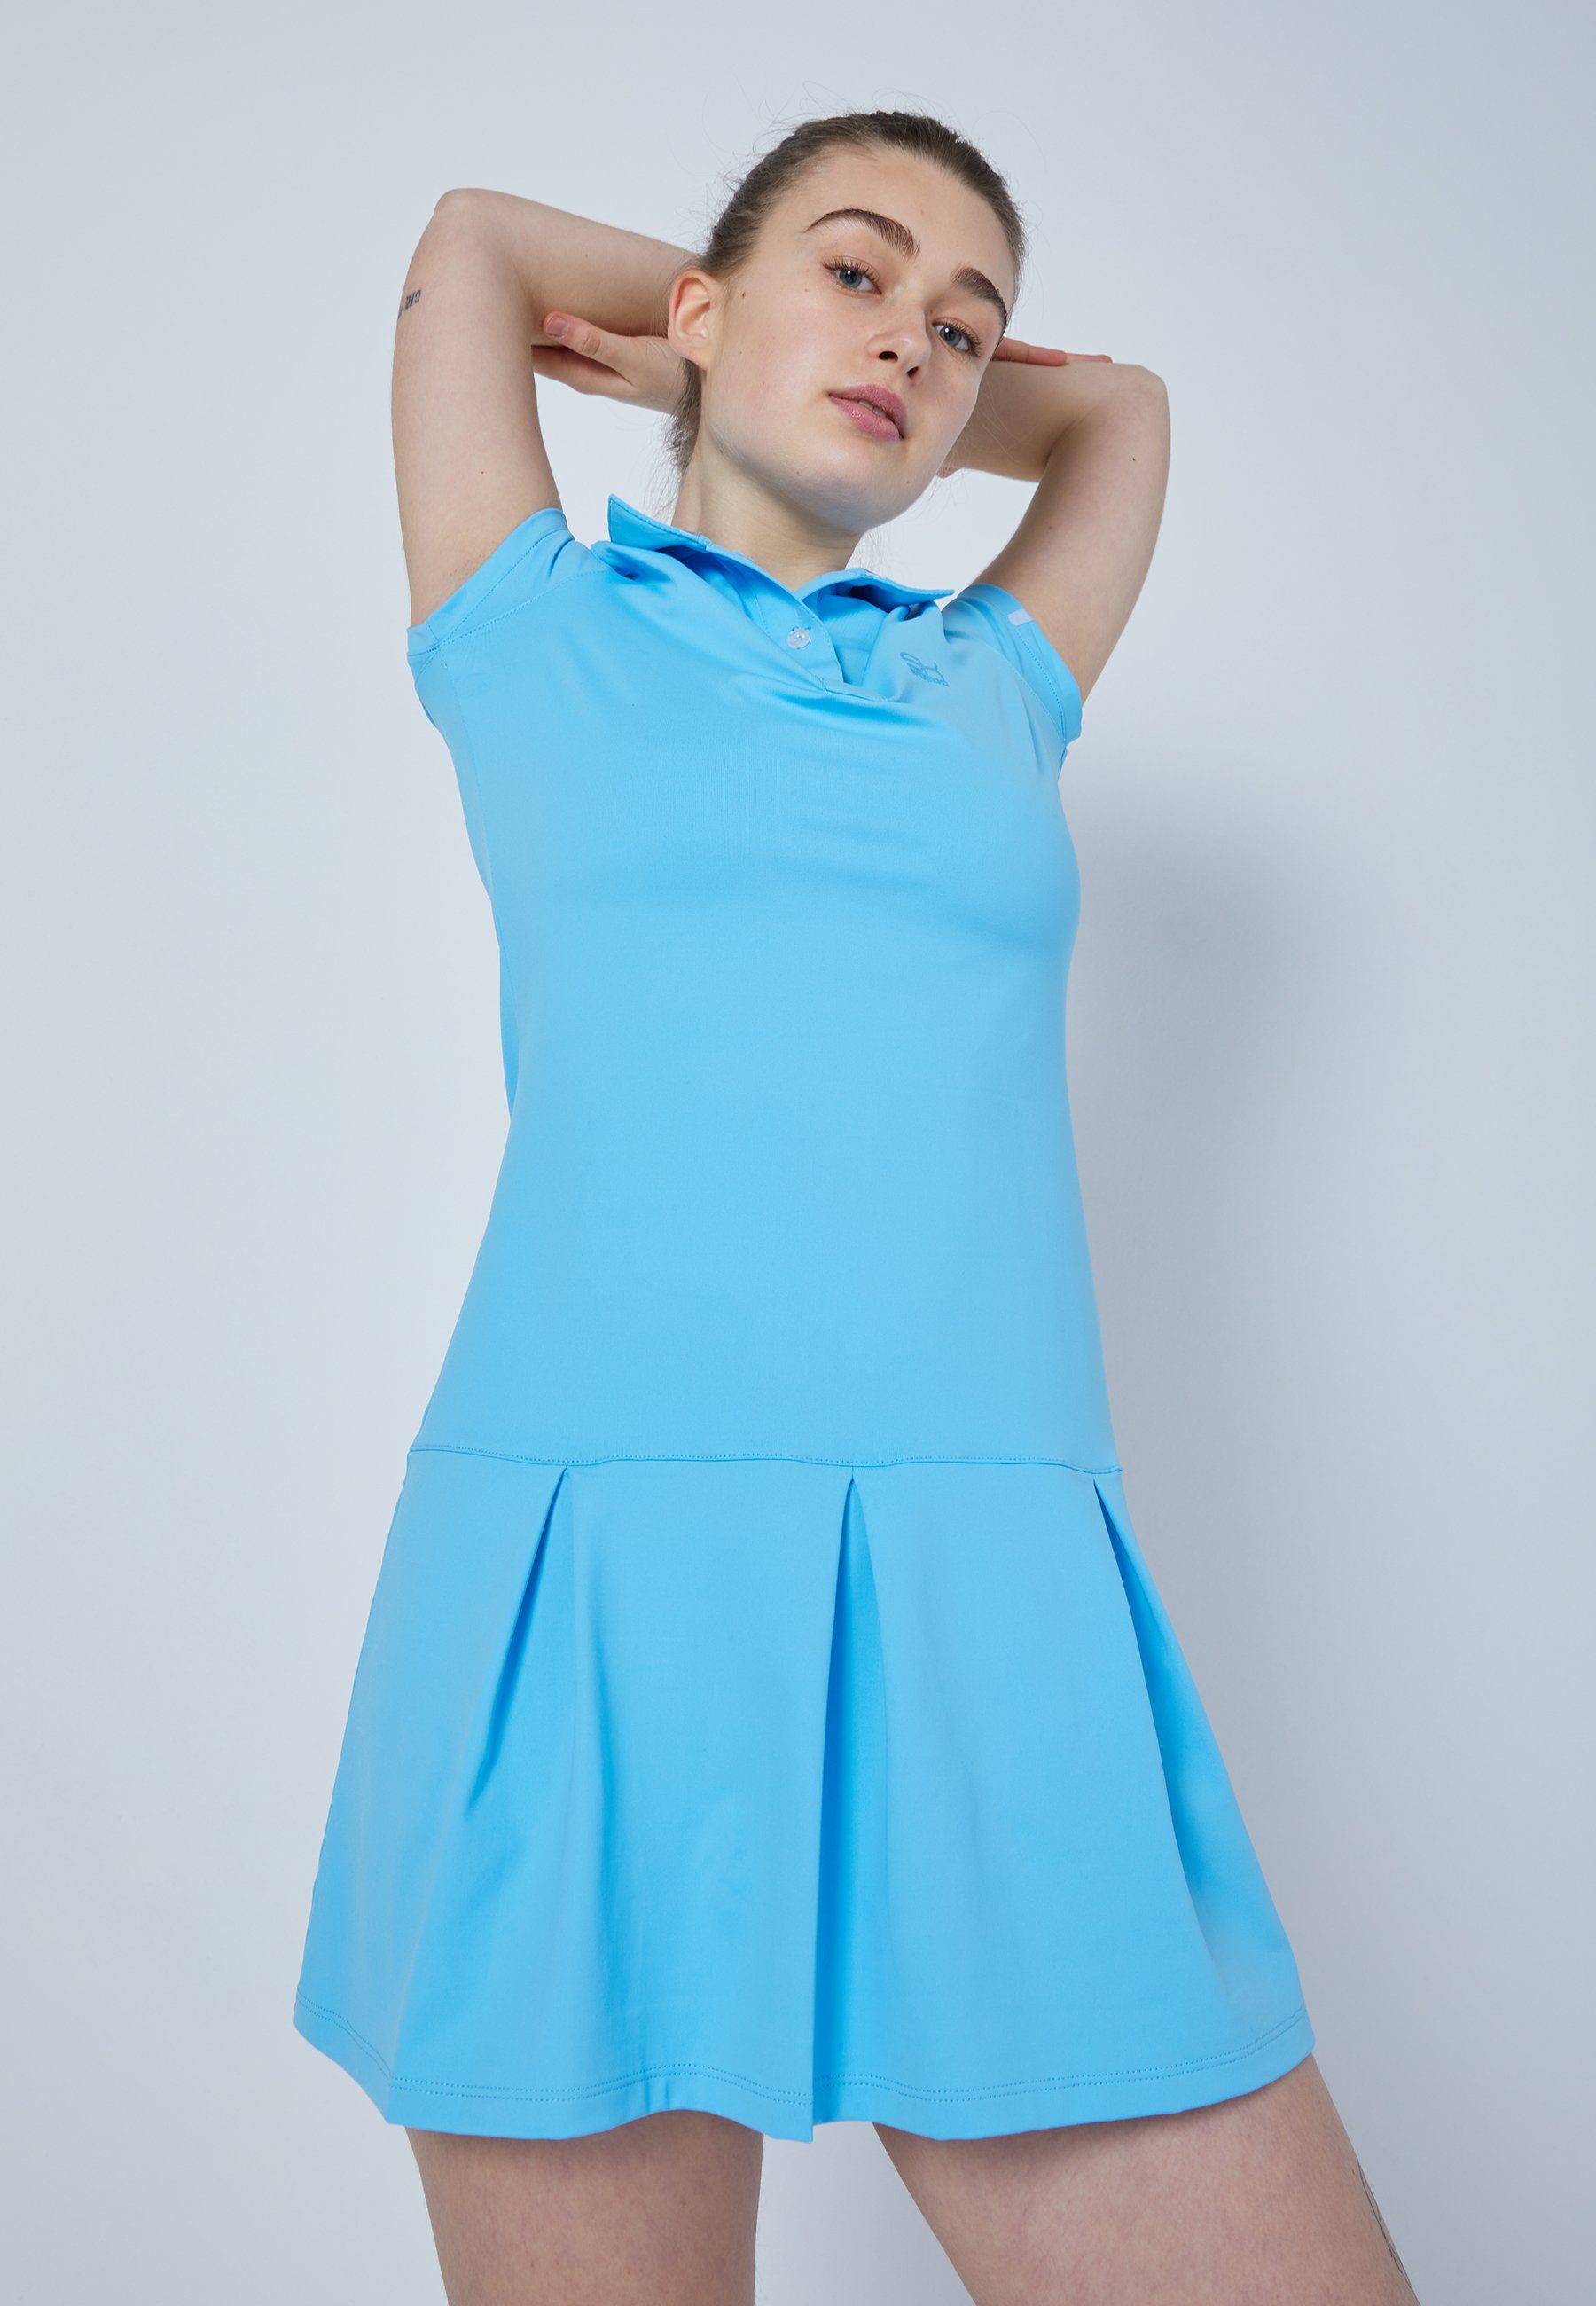 Polo SPORTKIND Kleid & hellblau Damen Mädchen Golf Tenniskleid